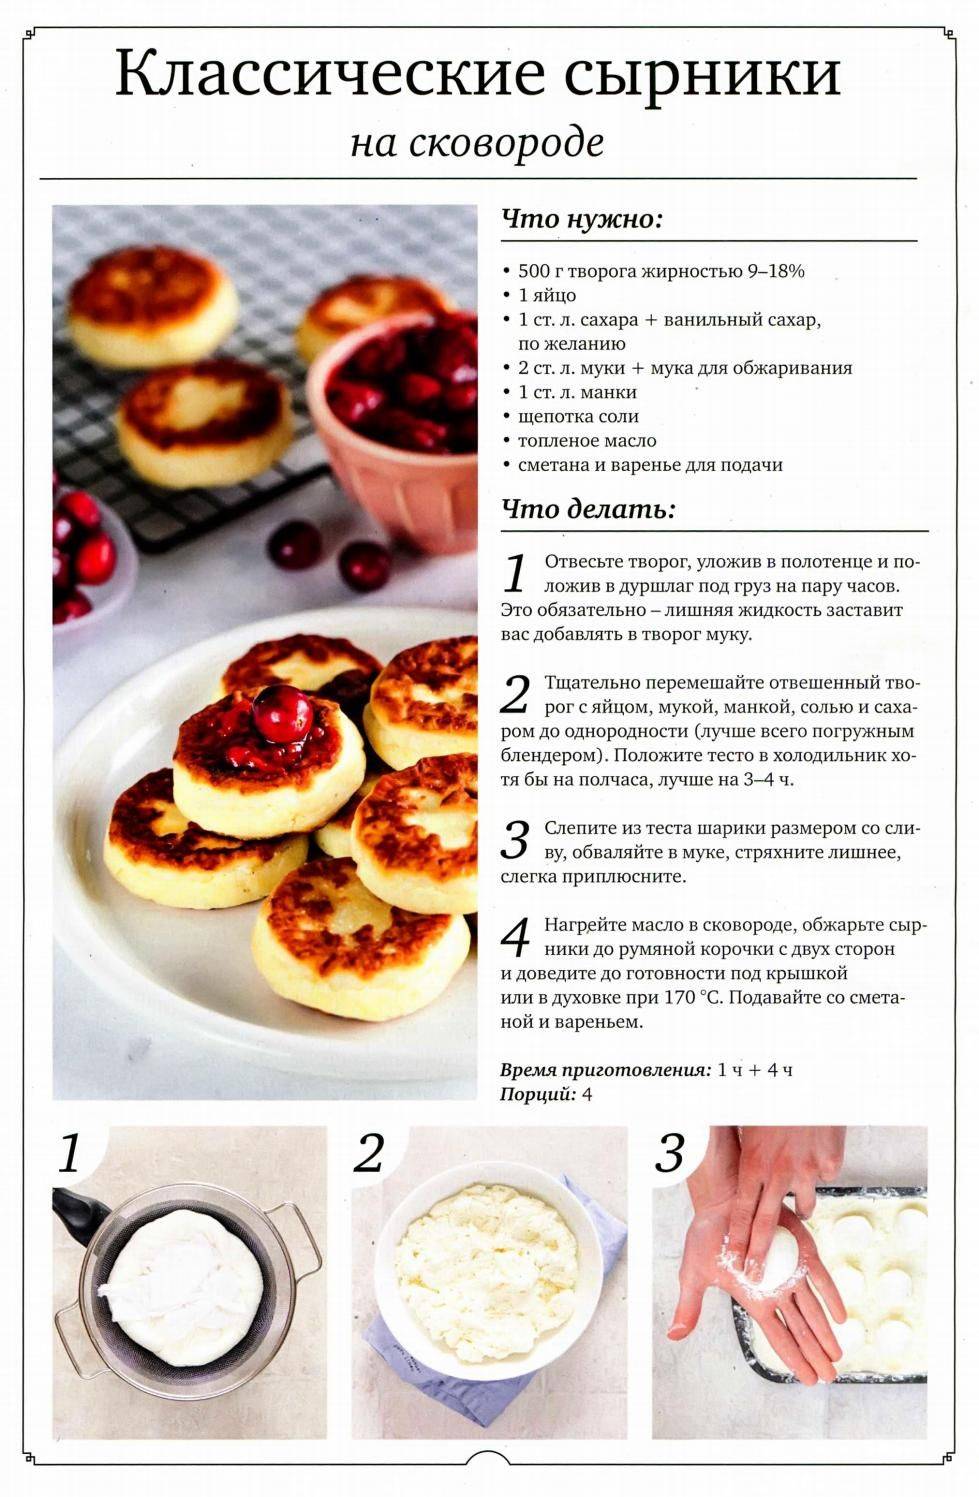 Сырники на сковороде: 6 классических рецептов пышных сырников